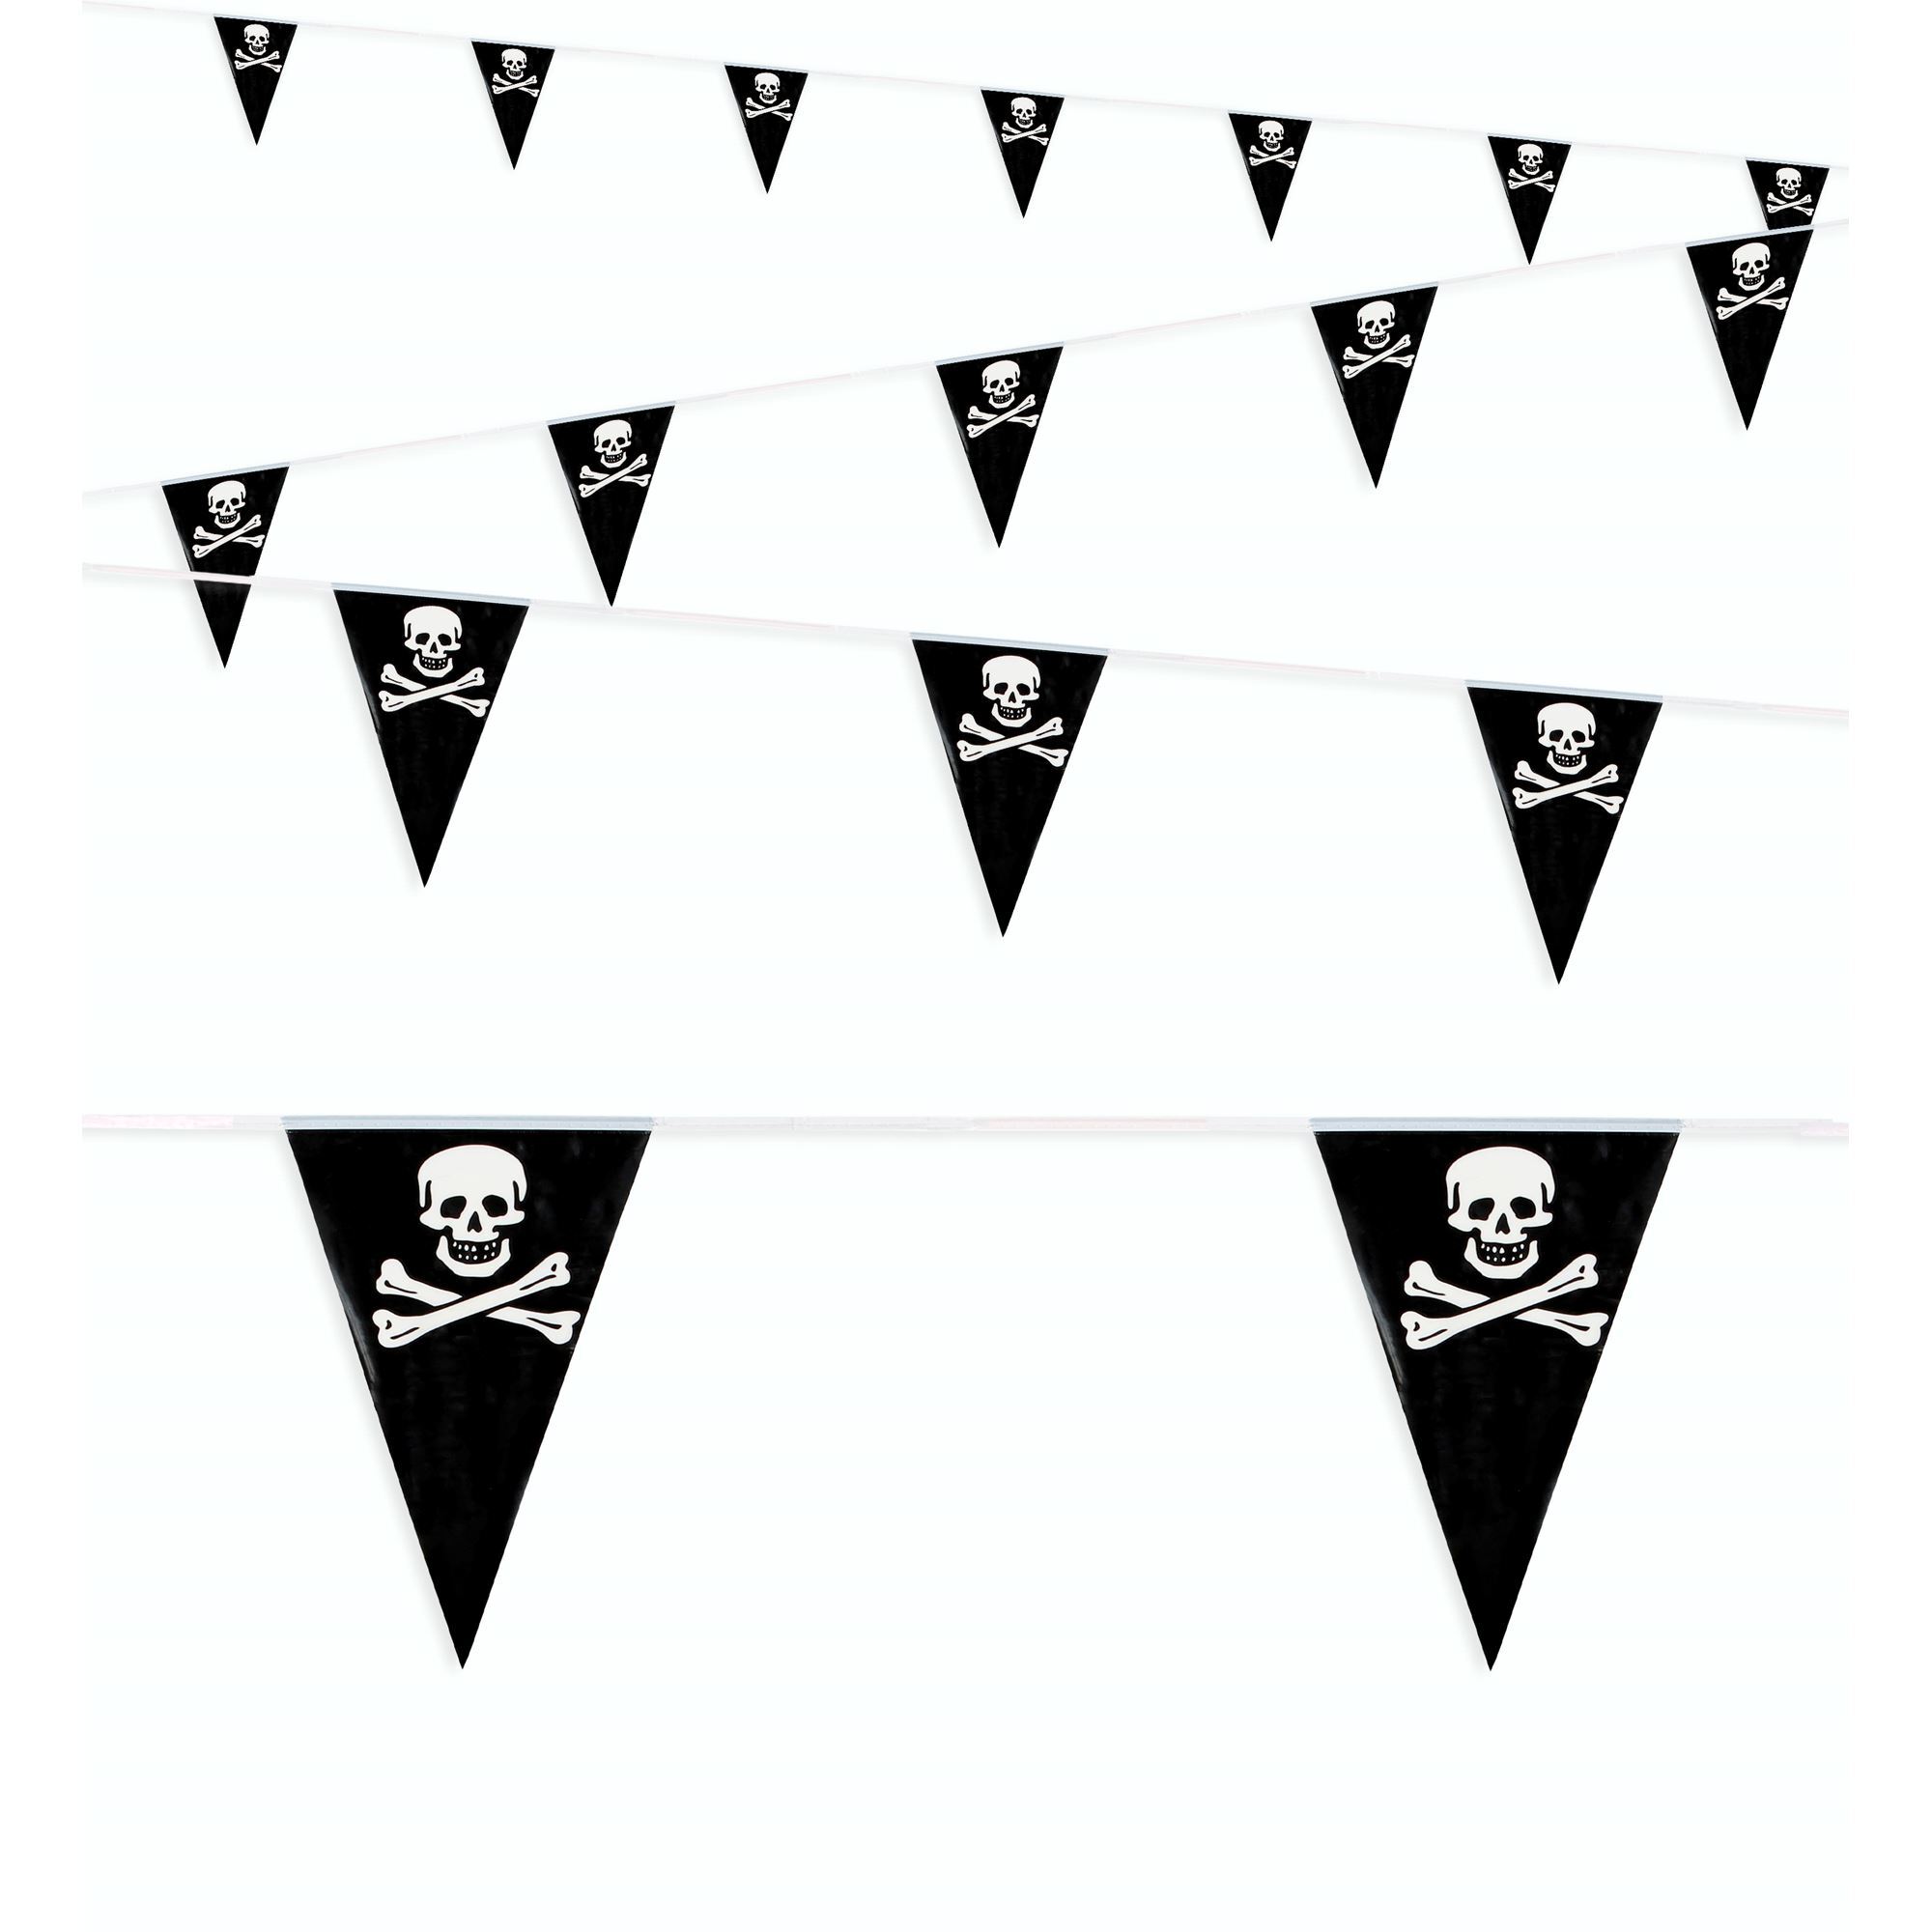 Vlaggenlijn piraat voor een leuk piratenfeest 6 meter lang